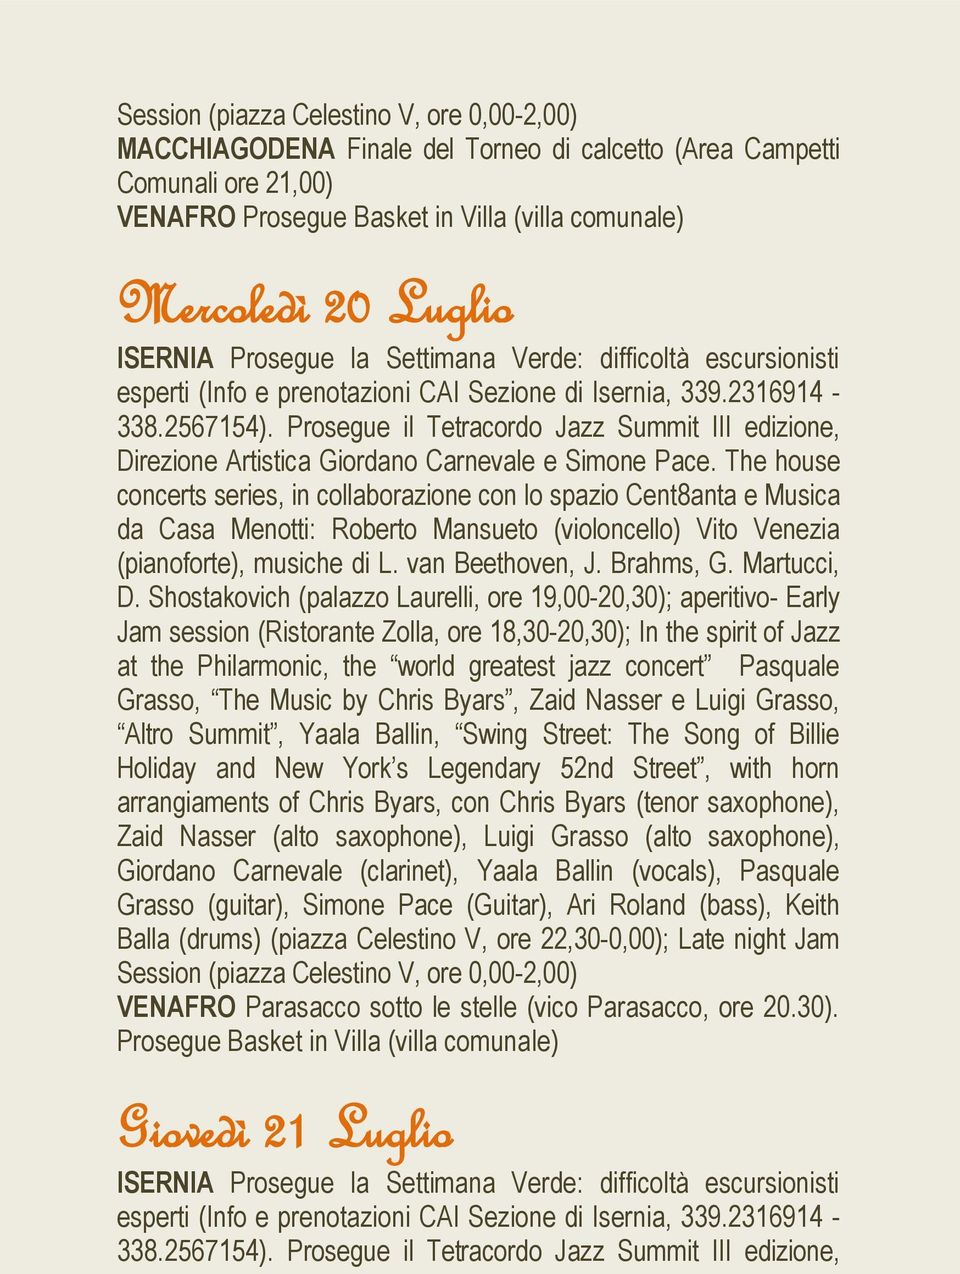 Prosegue il Tetracordo Jazz Summit III edizione, Direzione Artistica Giordano Carnevale e Simone Pace.